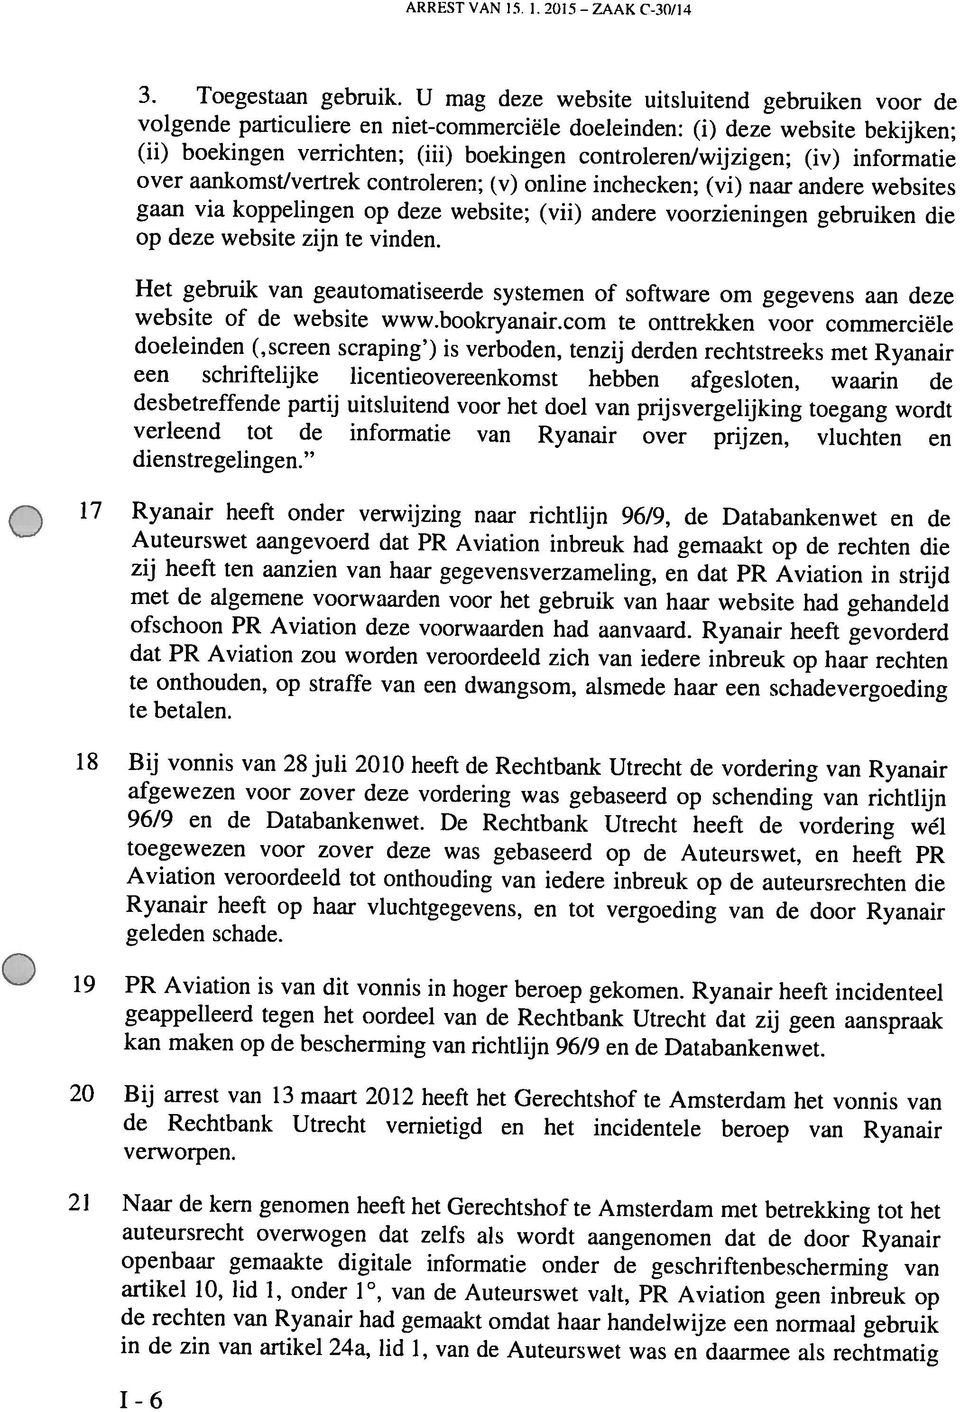 . 1.2015 ZAAKC-30/14 Q 1-6 in de zin van artikel 24a, lid 1, van de Auteurswet was en daarmee als rechtmatig de rechten van Ryanair had genaakt omdat haar handelwijze een normaal gebruik auteursrecht